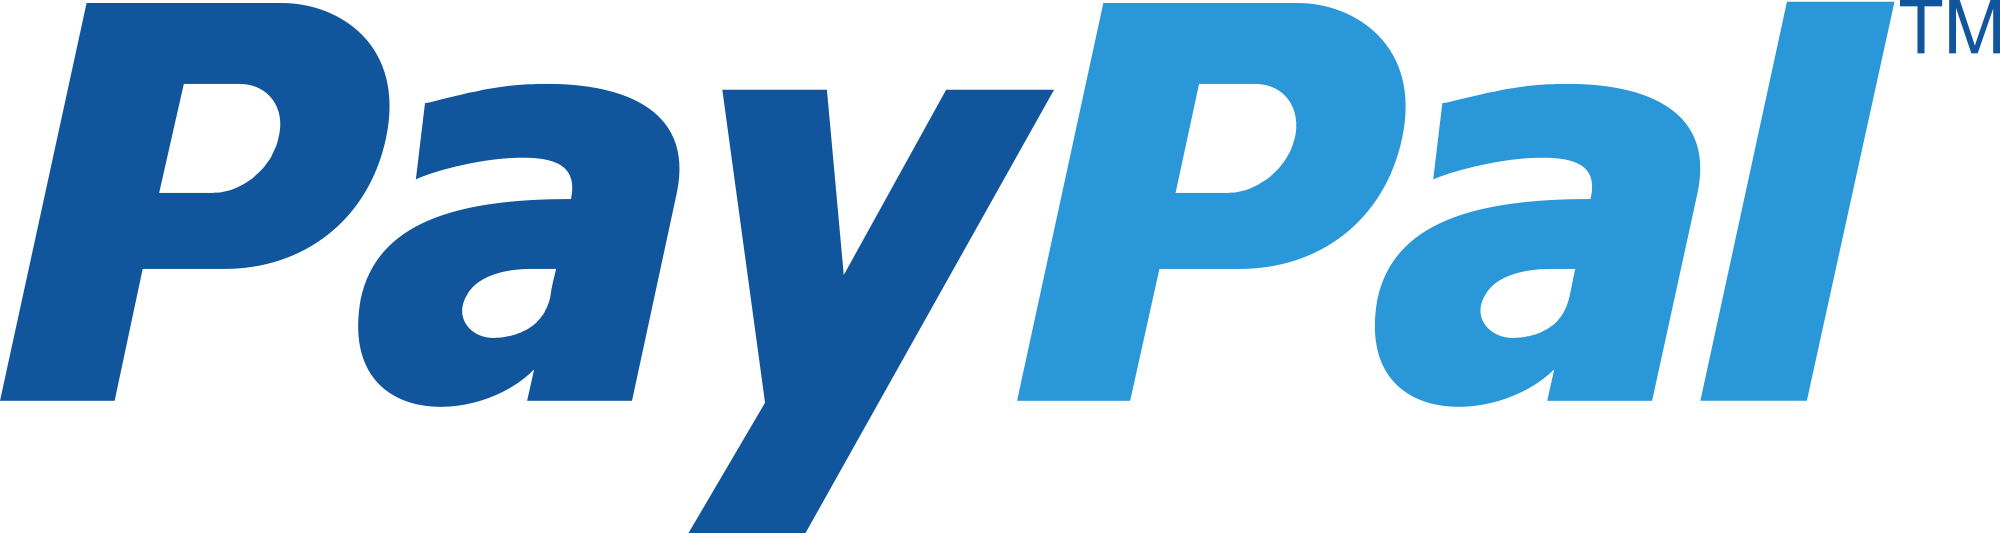 Paypal_logo-9.png